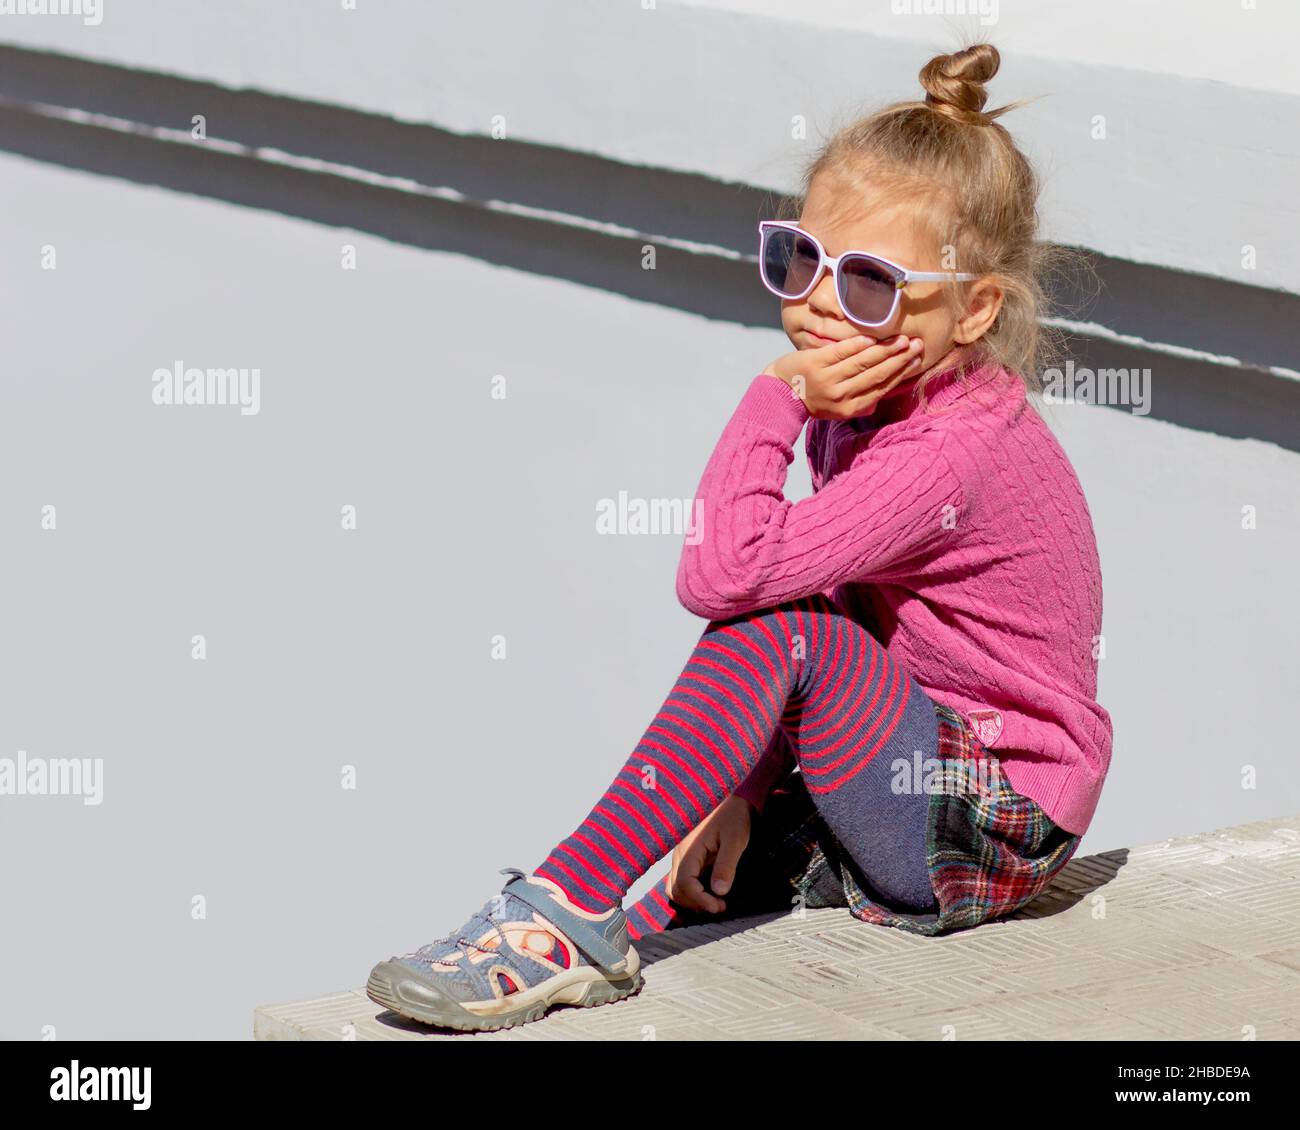 Lindo pensamiento de moda y soñando niña de 5 años sentado sosteniendo su barbilla y mirando a un lado en gafas de fuera en verano Fotografía de stock Alamy